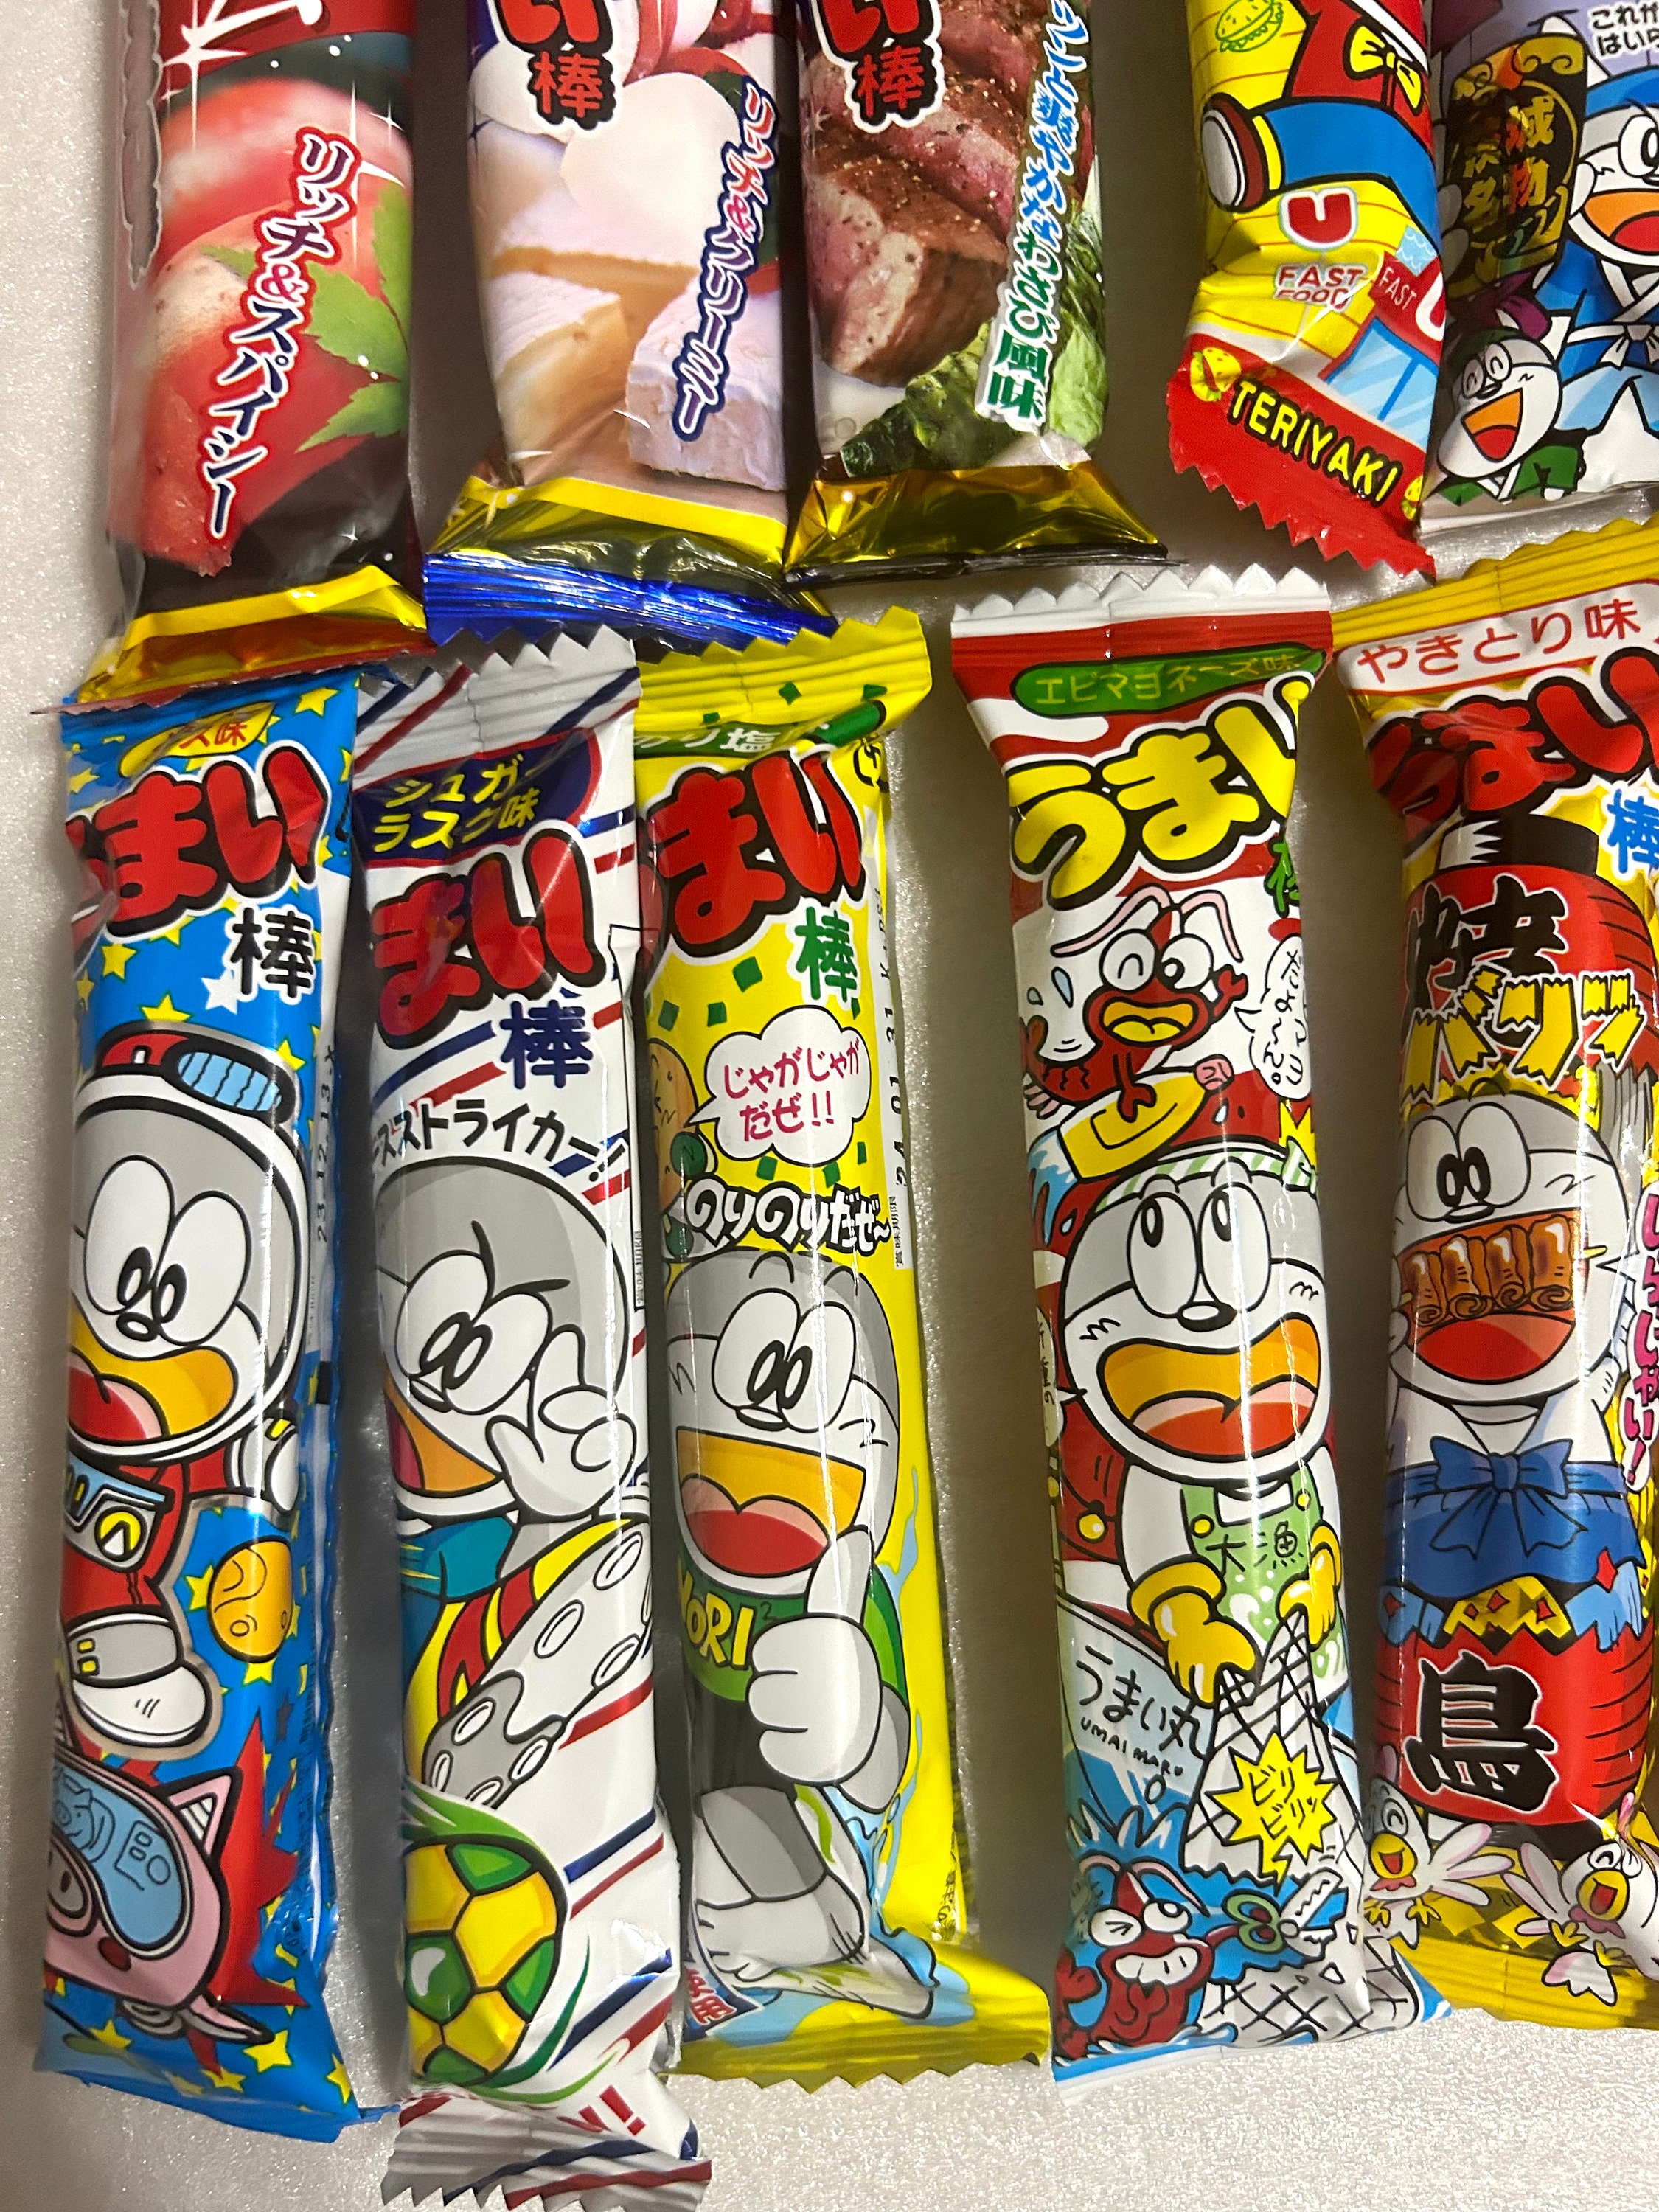 UMAIBO Snack Japonais Boite de 12 bâtonnets 3 saveurs - Cdiscount Au  quotidien